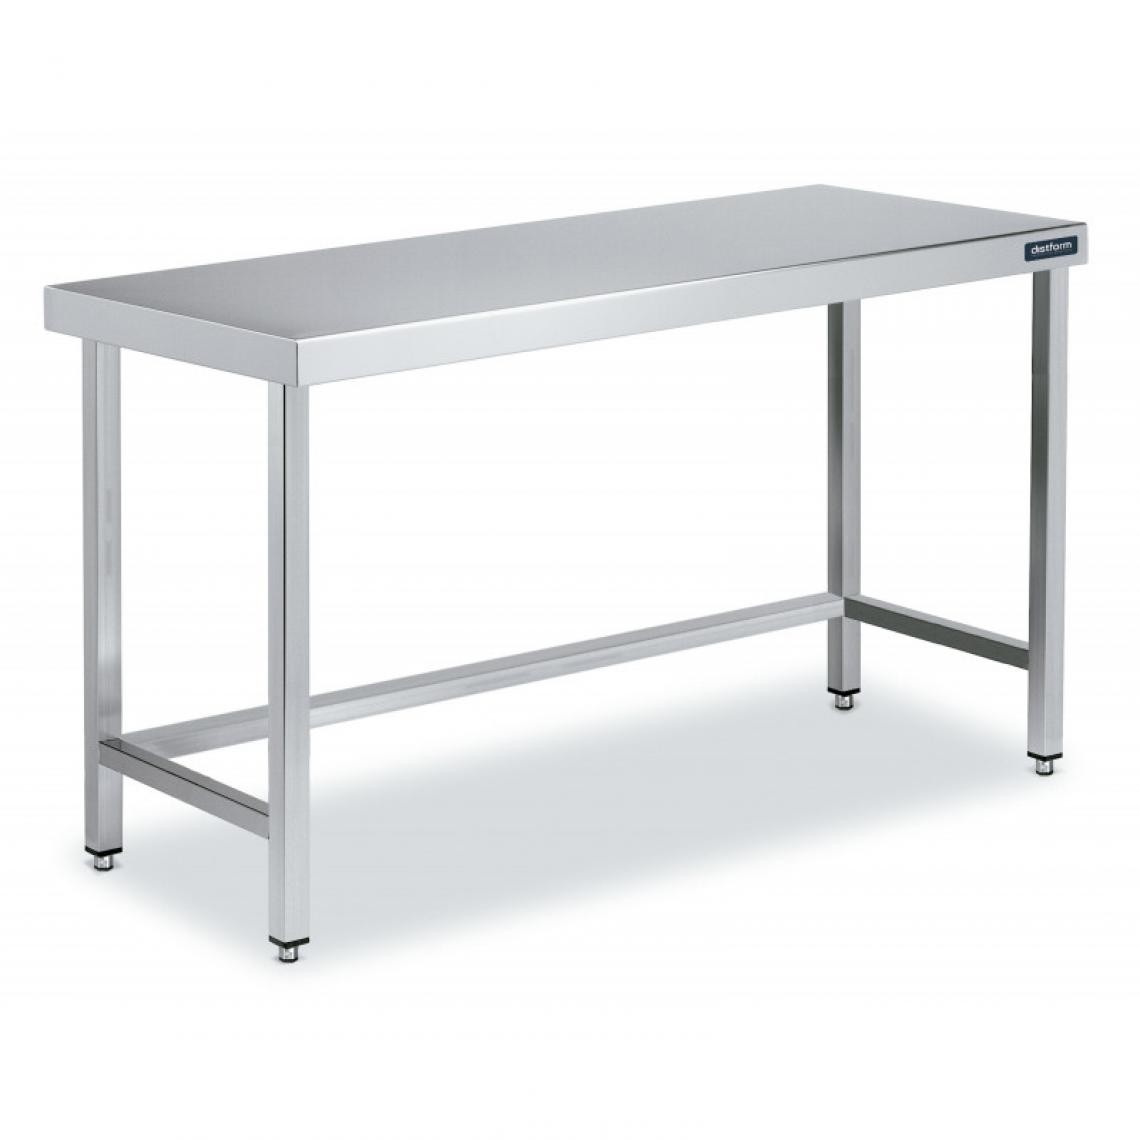 DISTFORM - Table Inox de Travail Centrale avec Renforts - Gamme 550 - Distform - Acier inoxydable1600x550 - Tables à manger